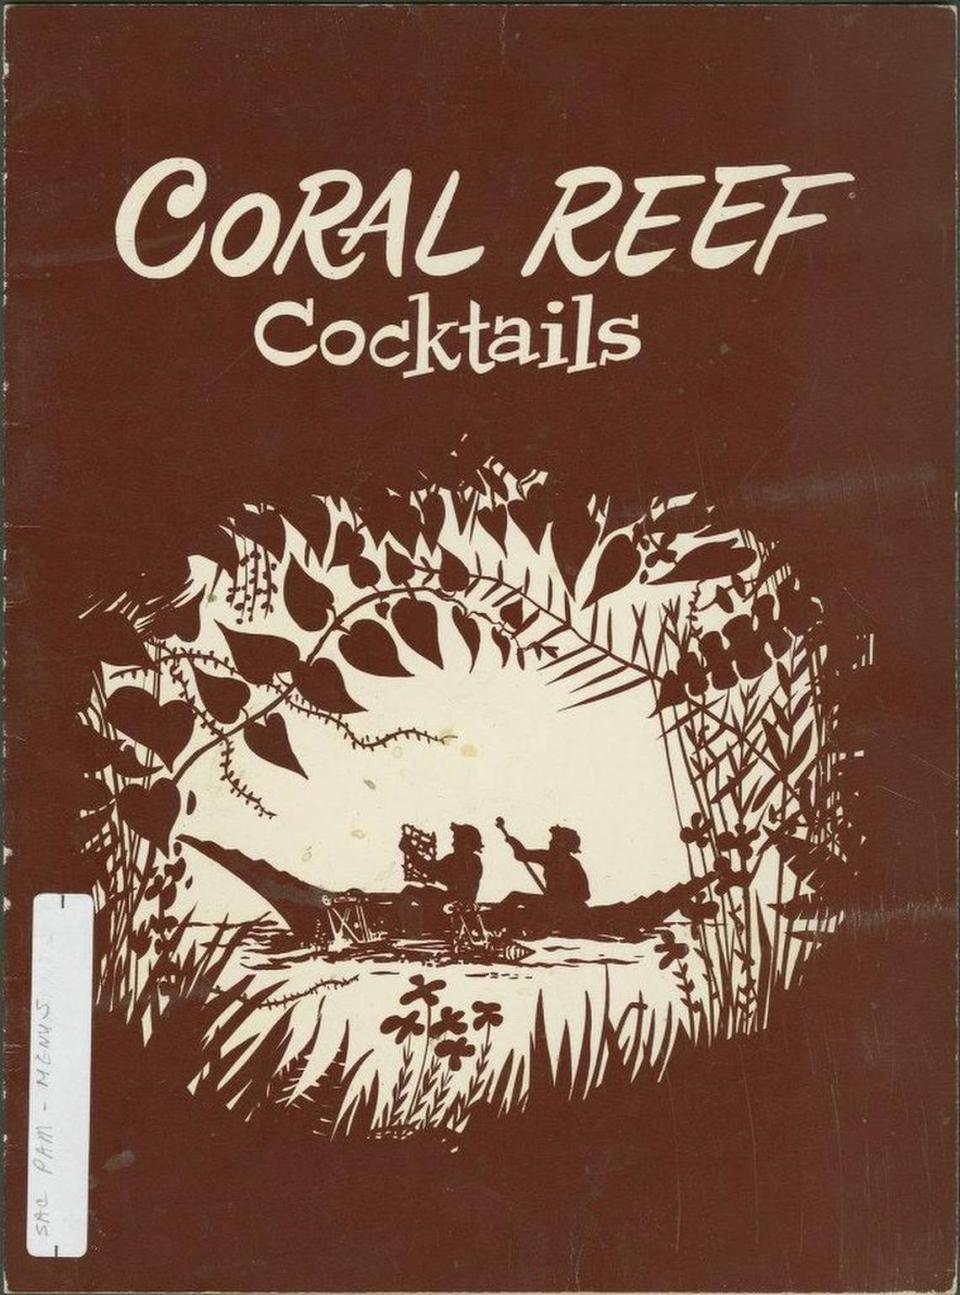 Coral Reef Cocktail Menu